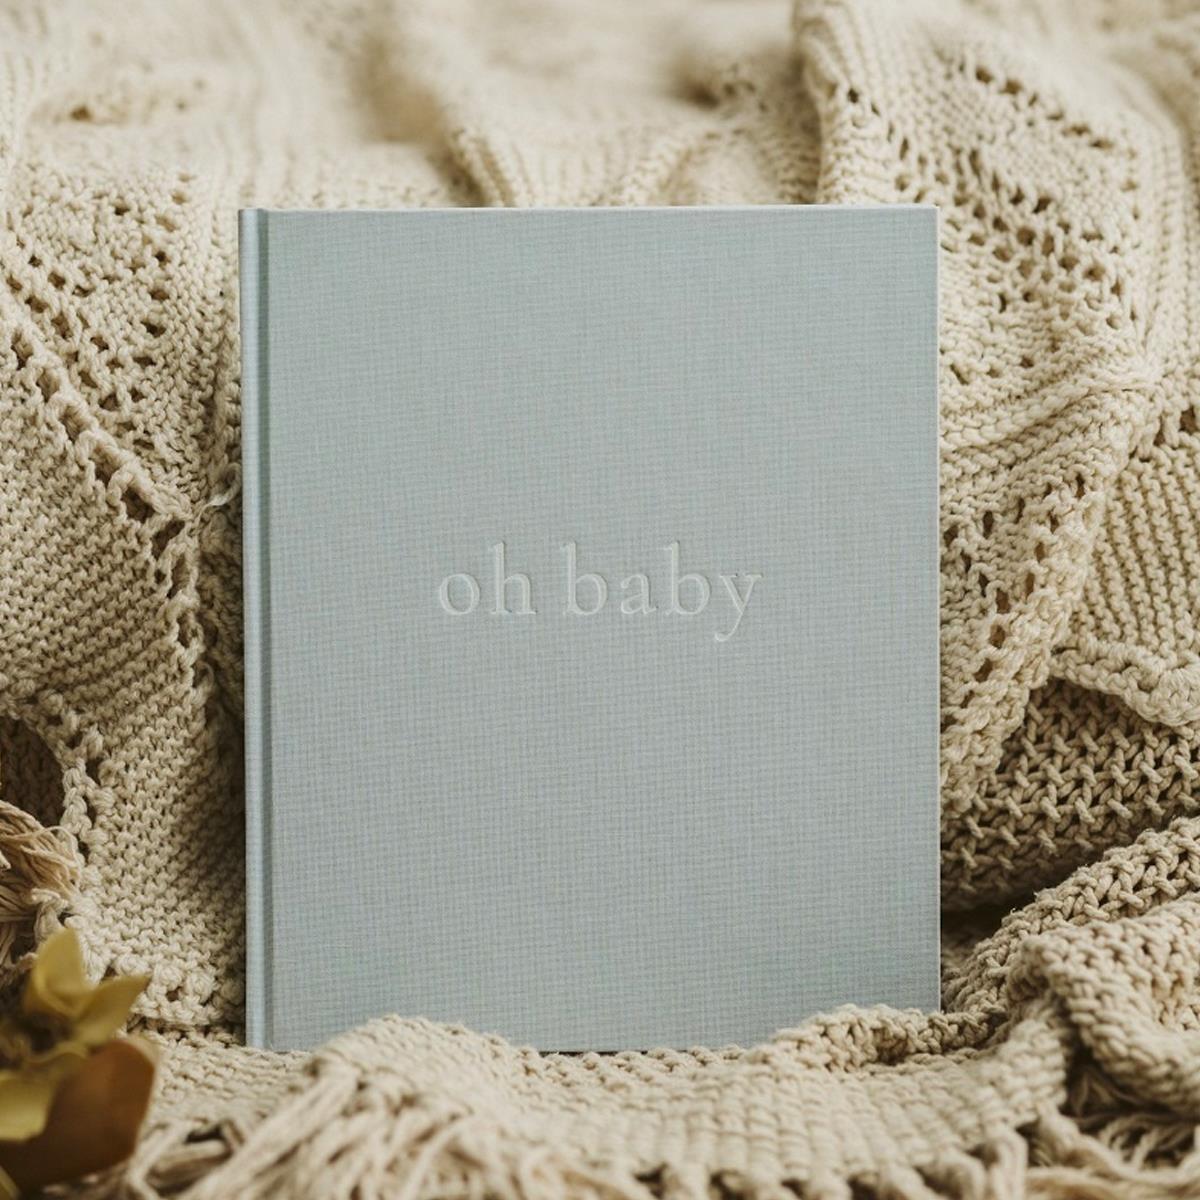 Pamiętnik dziecka „oh baby”